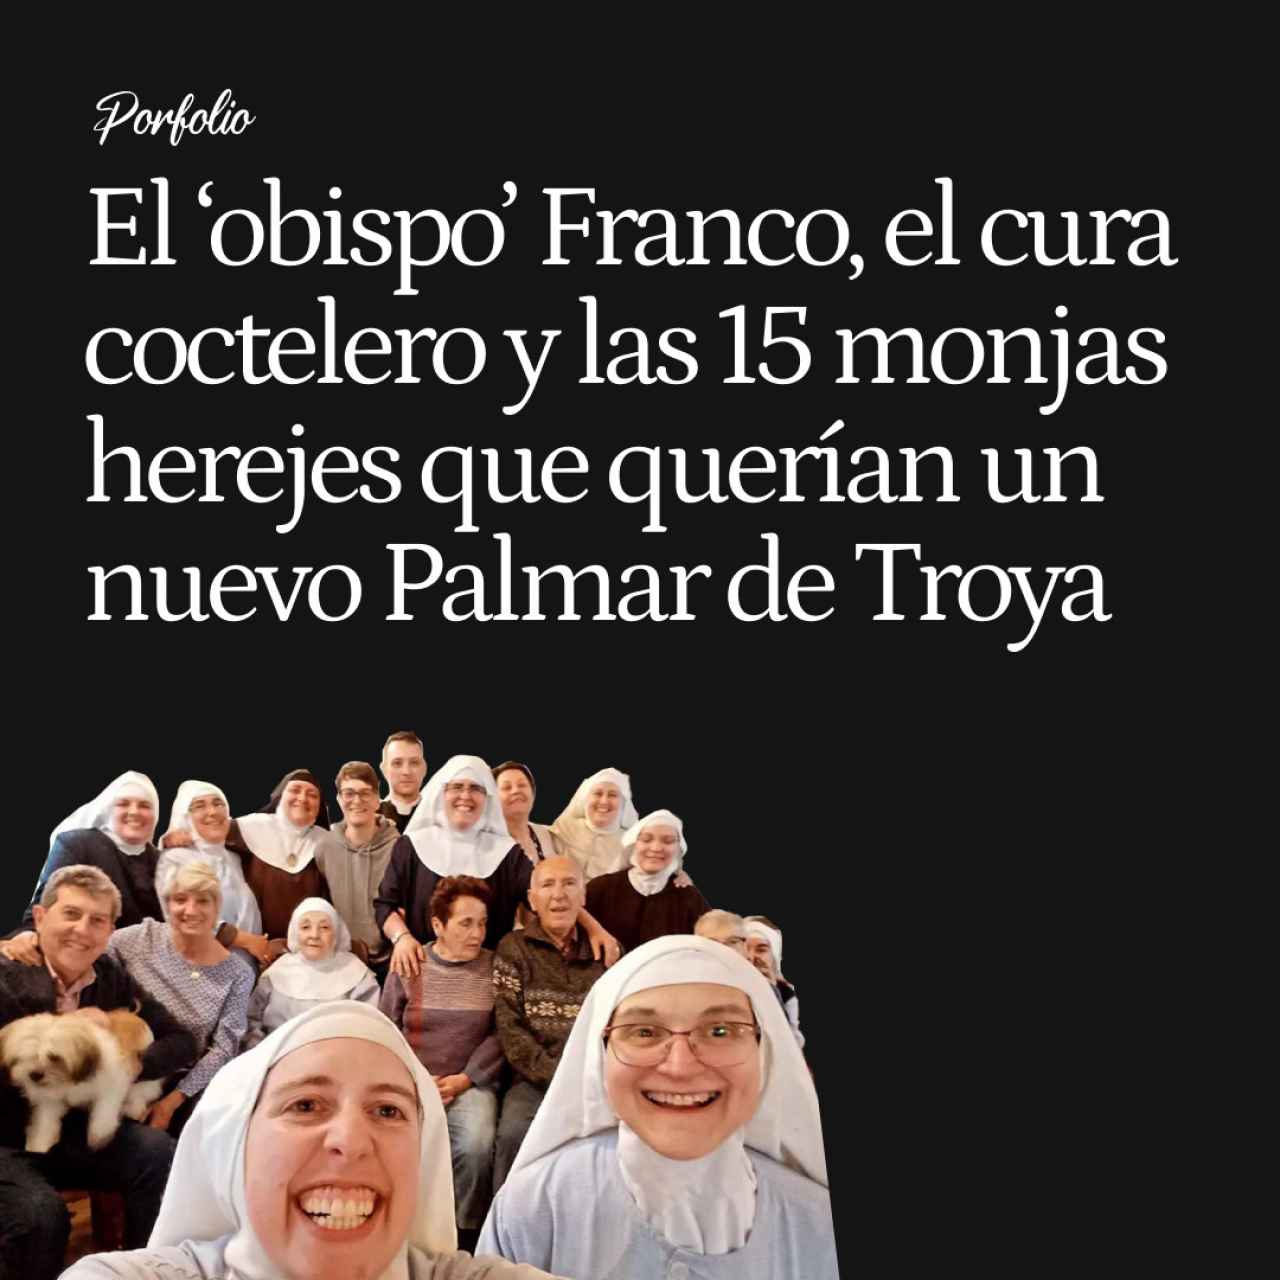 El plan del 'obispo' Franco, un cura coctelero y 15 monjas herejes para fundar un nuevo Palmar de Troya en Burgos